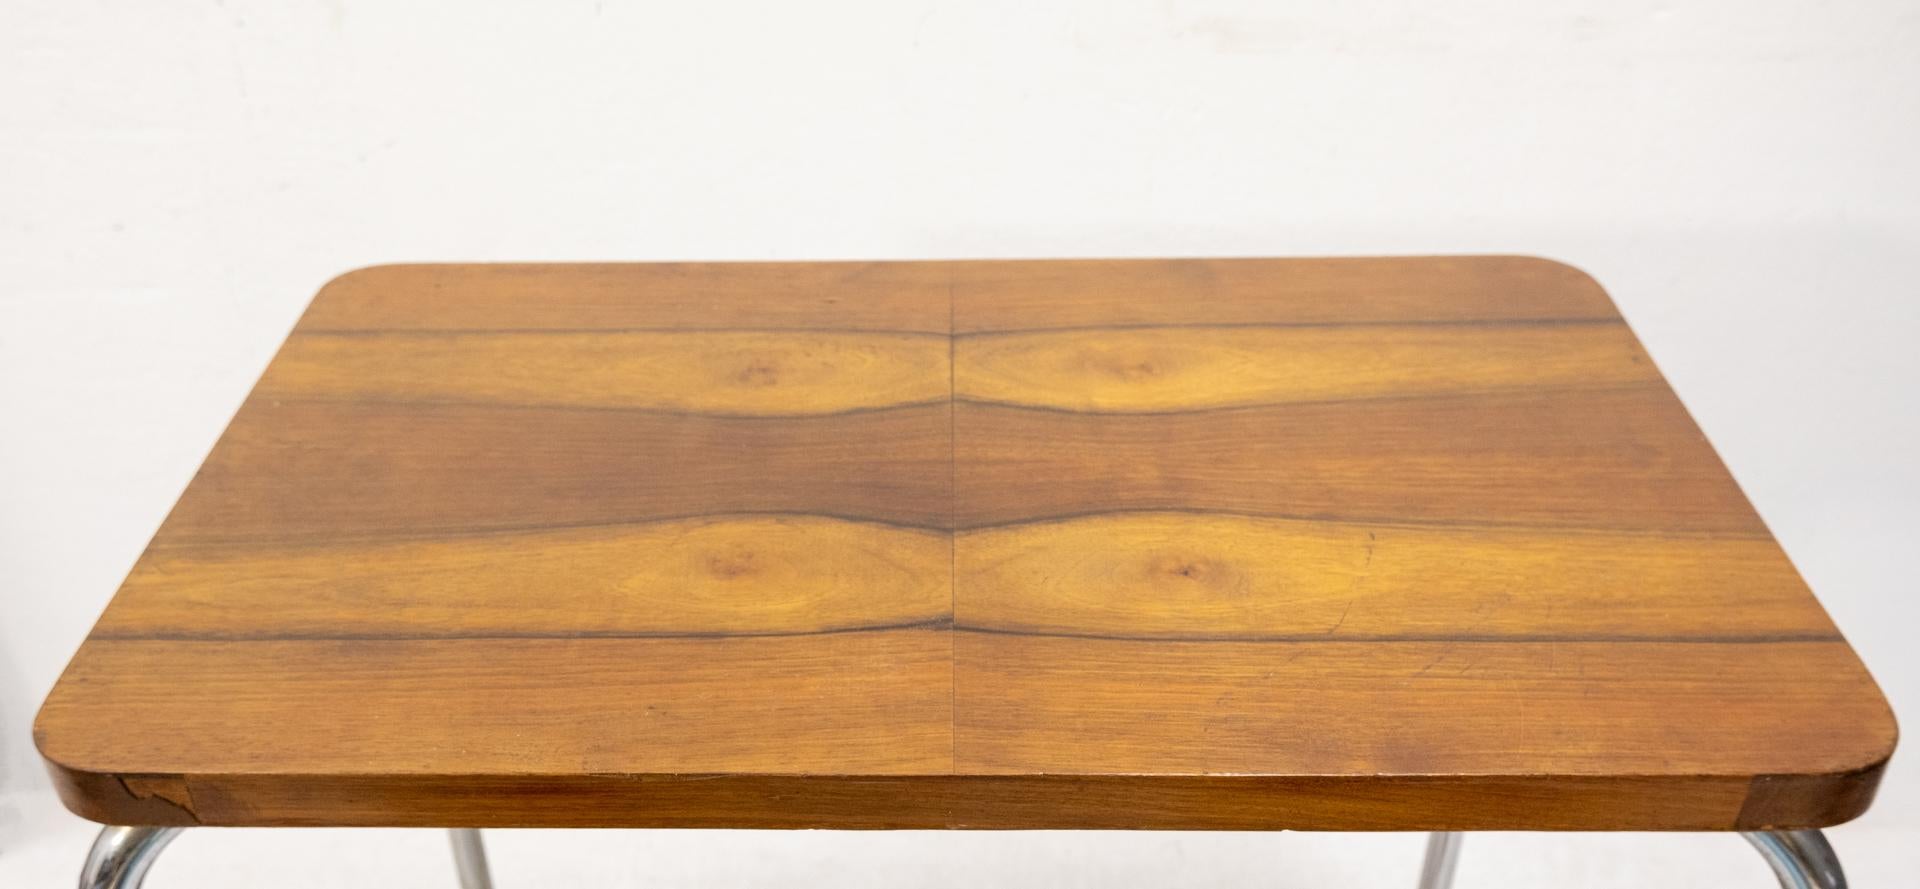 Zweistöckiger Art Deco Beistelltisch. Gestell aus Chromrohr, mit Nussbaumplatte.
Original Art-Déco-Tisch. Gispen Holland zugeschrieben, 1930-1940 in einem gebrauchten Zustand
Schöne warme Farbe Holz.